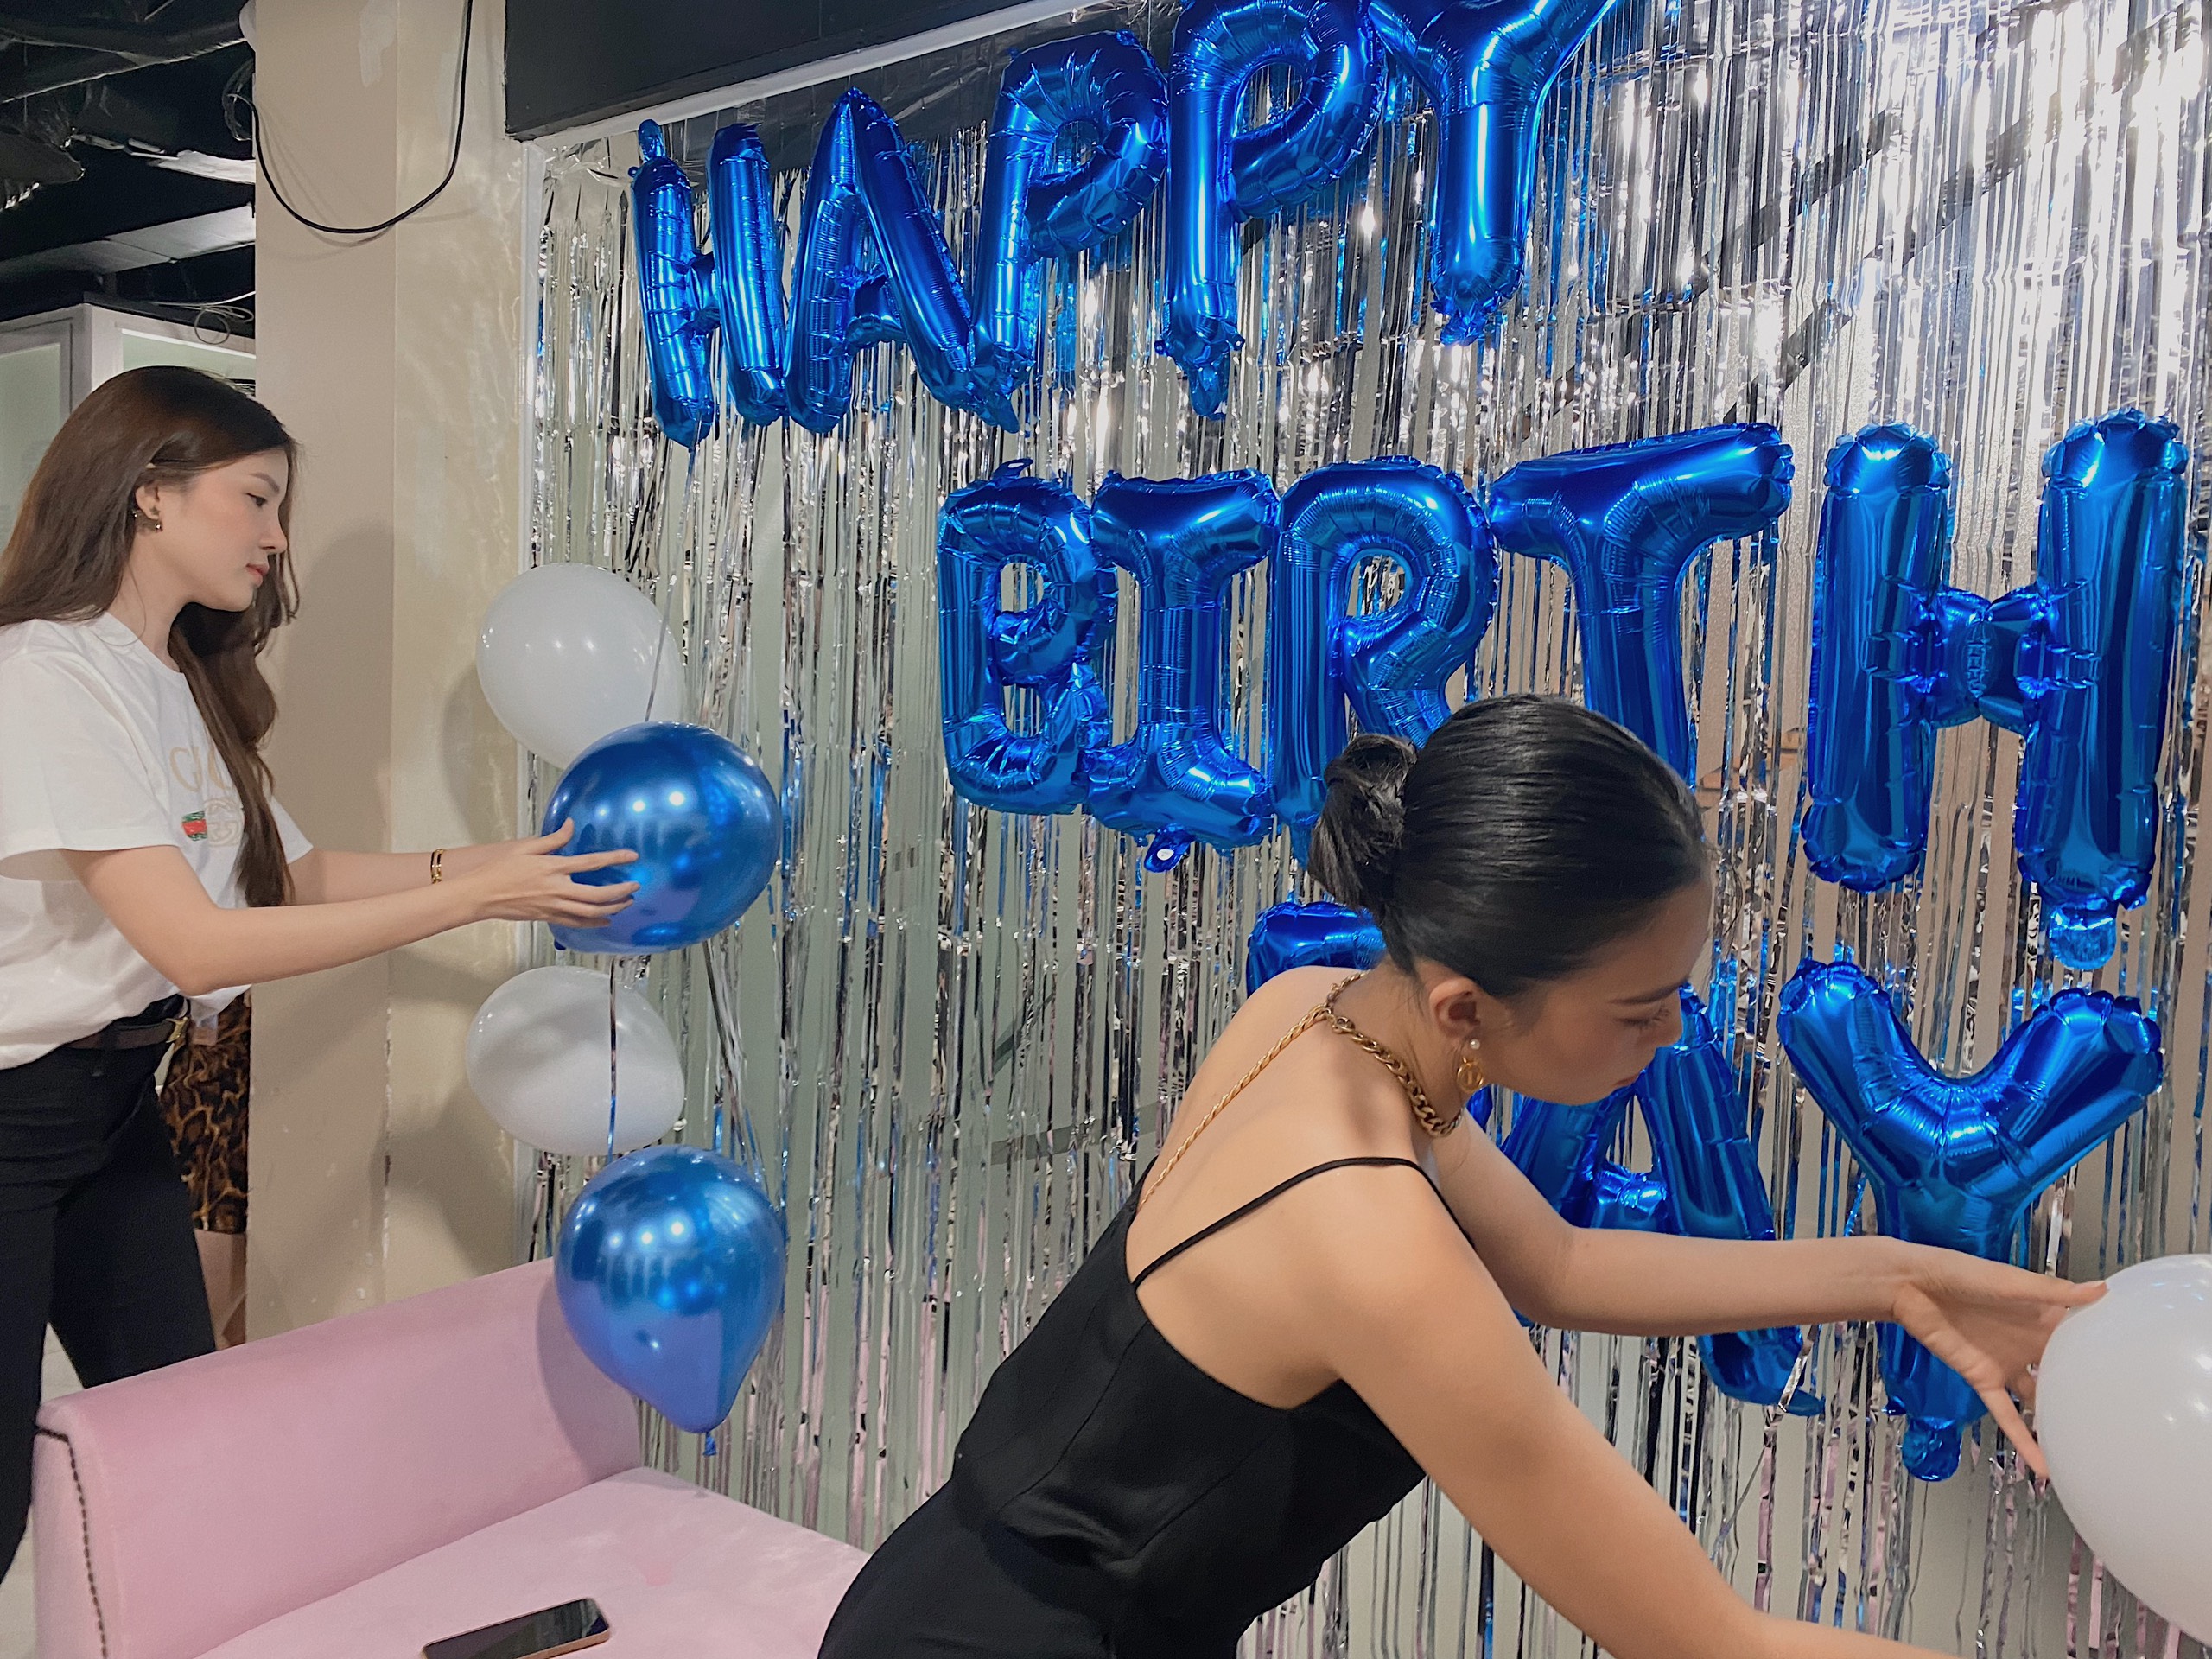 Hoa‌ ‌hậu‌ ‌Tiểu‌ ‌Vy‌ ‌“lột”‌ ‌trang‌ ‌sức‌ ‌hàng‌ ‌hiệu‌ ‌tặng‌ ‌sinh‌ ‌nhật‌ ‌Đỗ‌ ‌Hà‌ ‌ ‌ - ảnh 1